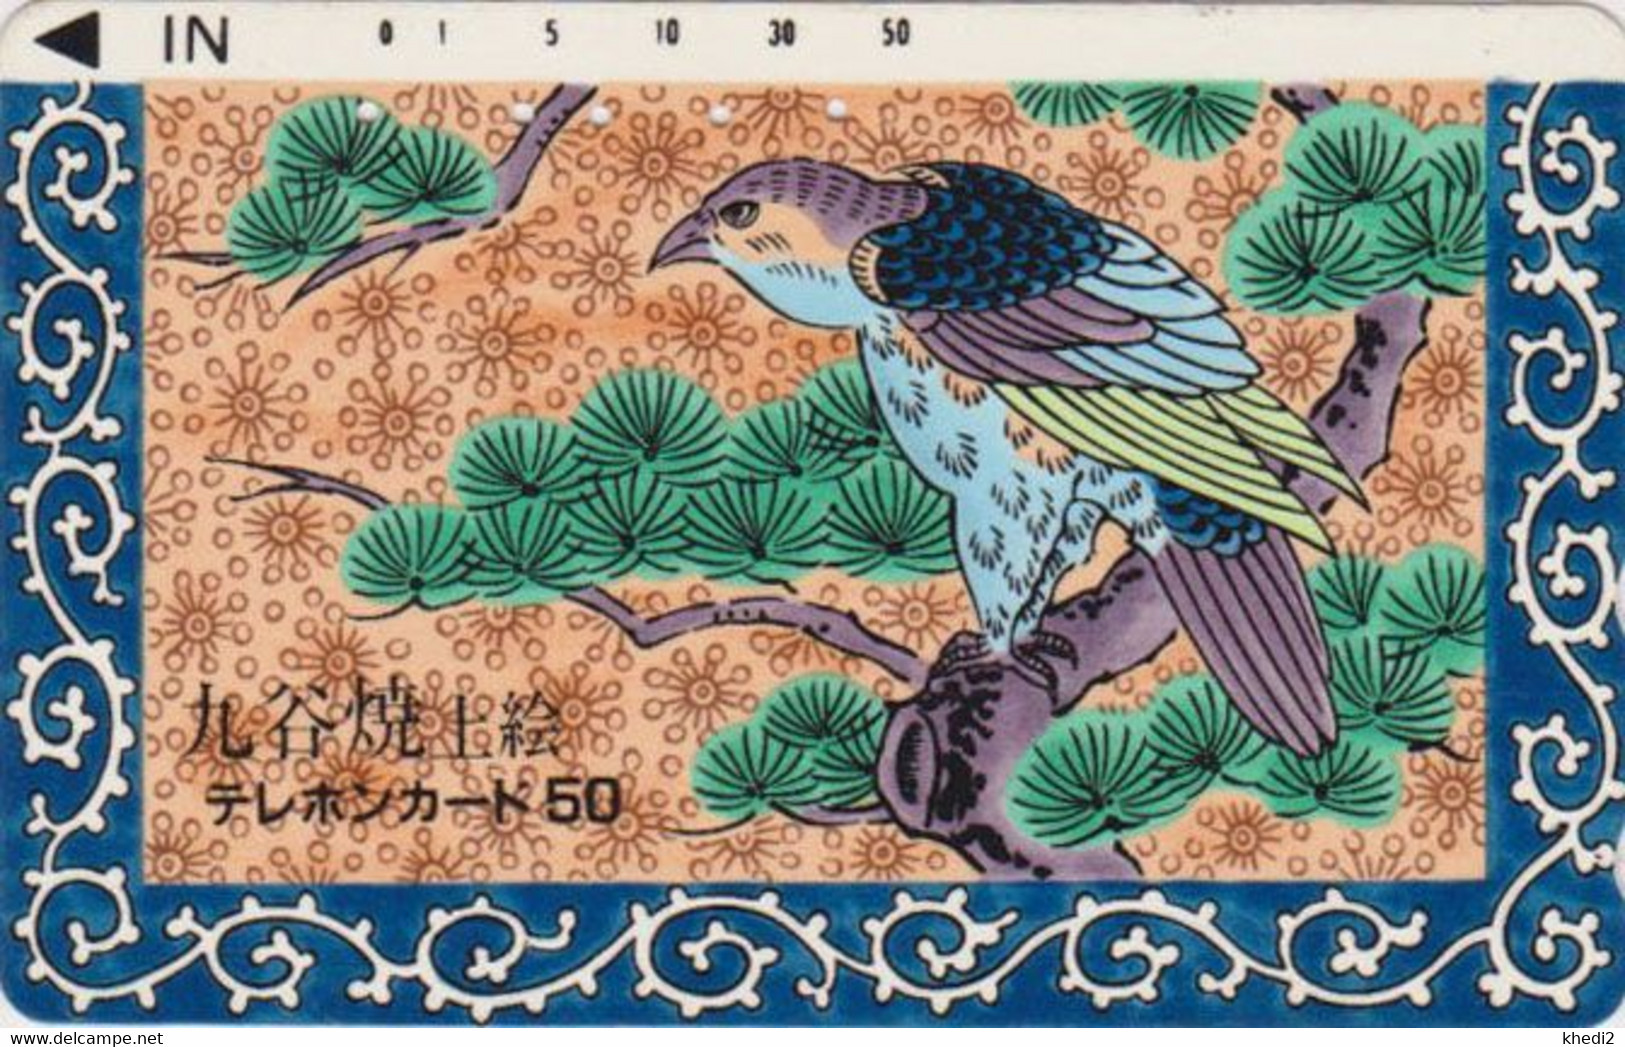 TC JAPON En LAQUE BLANCHE / 110-011 - ANIMAL - Oiseau Rapace AIGLE - EAGLE Bird JAPAN LACQUERED Phonecard - Arenden & Roofvogels